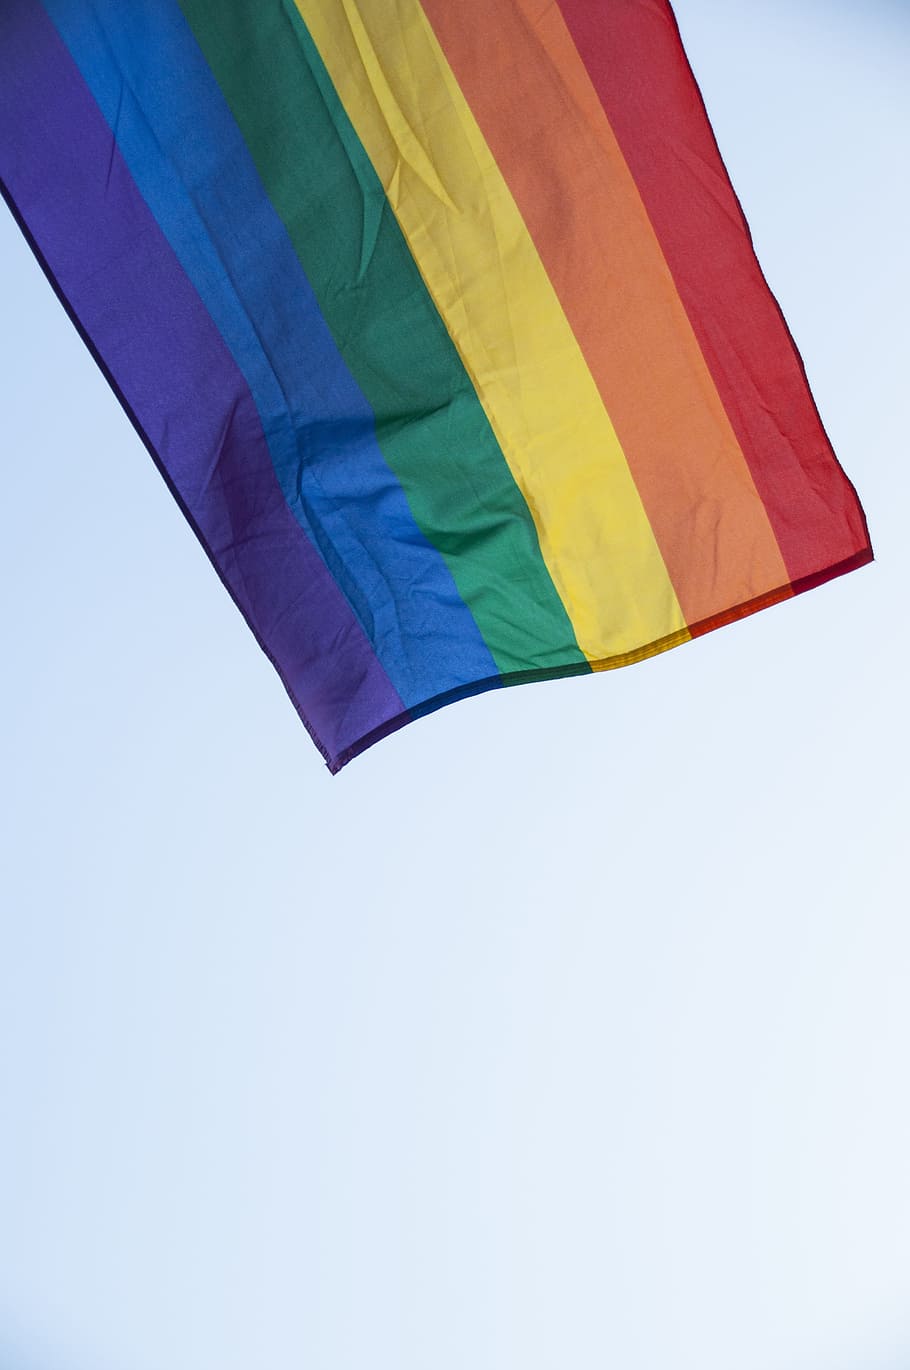 Hd Wallpaper Rainbow Flag Under Cloud Sky Pride Gay Love Pride